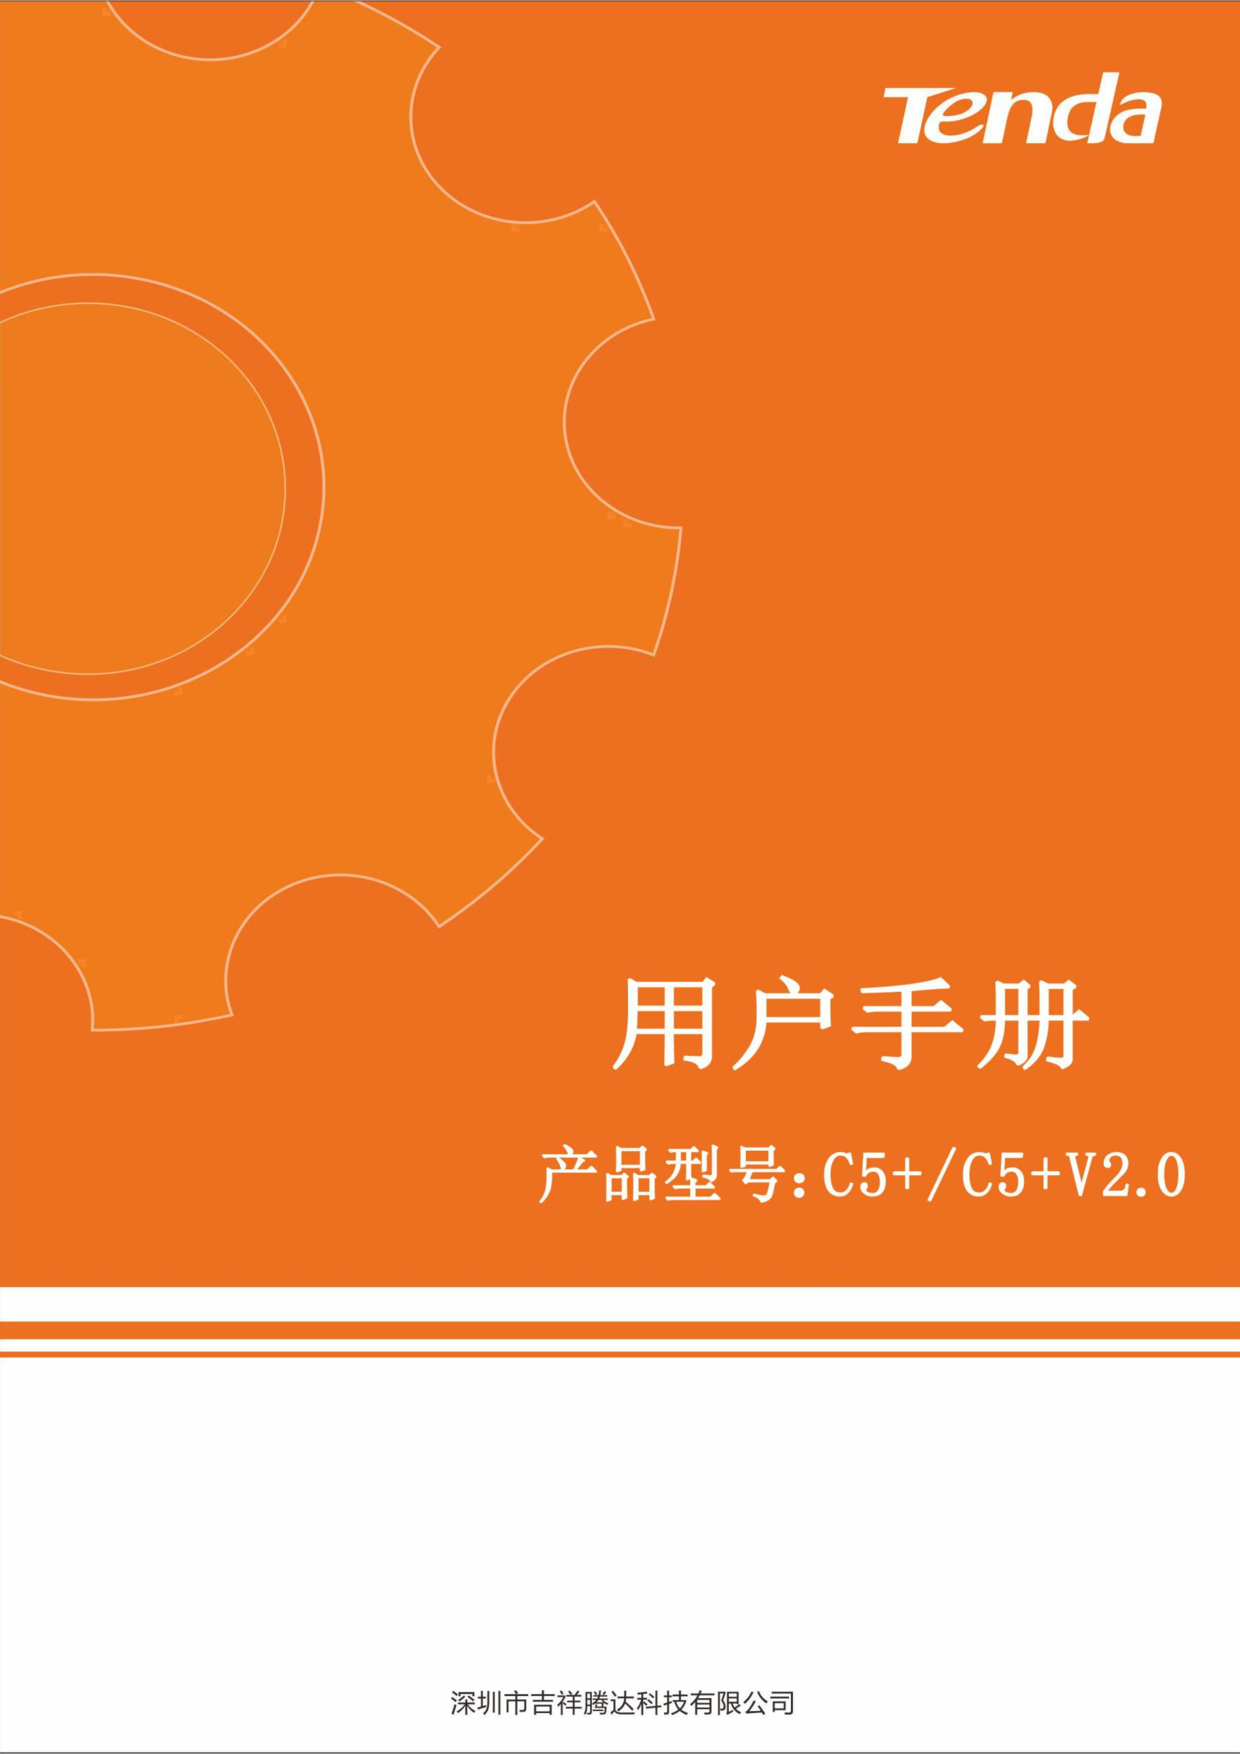 腾达 Tenda C5+, C5+ V2.0 使用说明书 封面